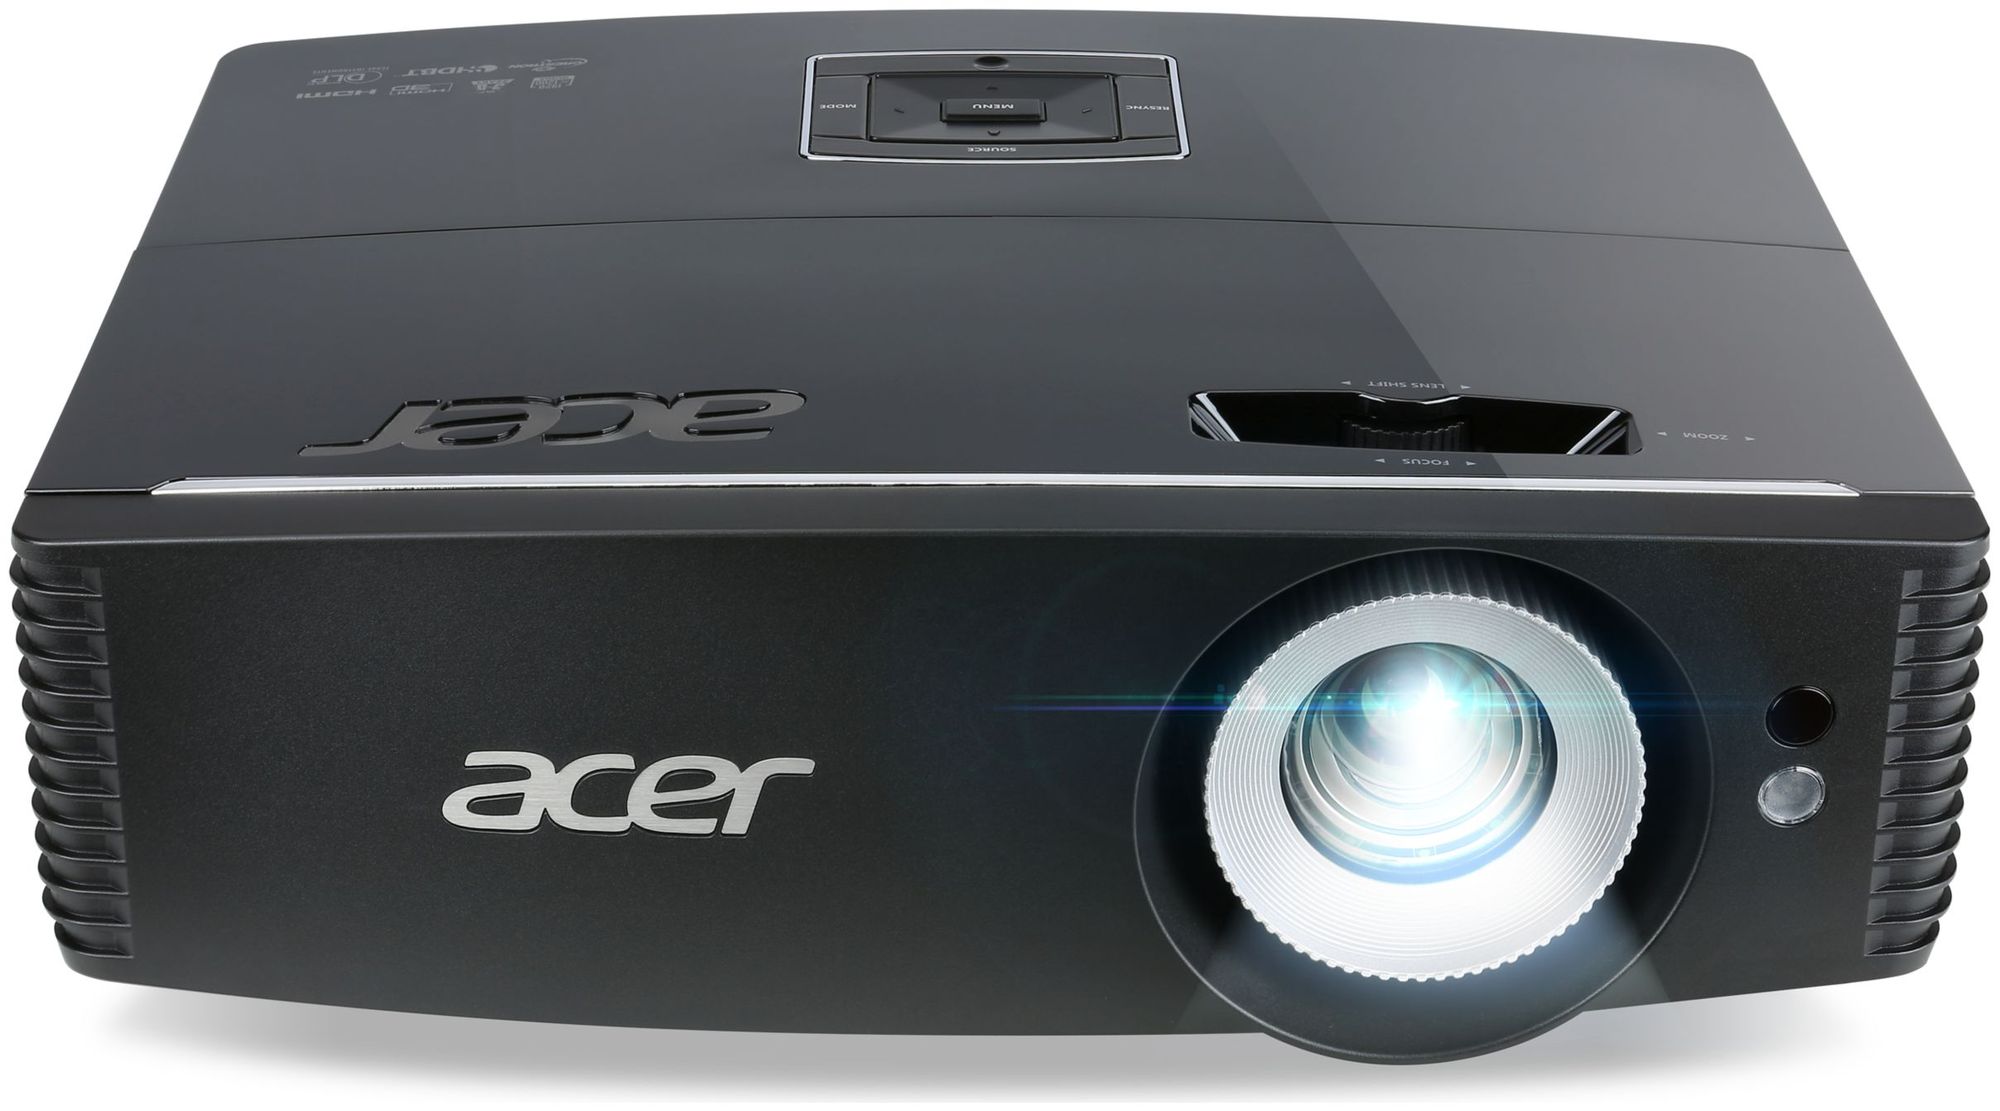 Проектор Acer P6605 DLP 5500Lm (MR.JUG11.002) цена и фото